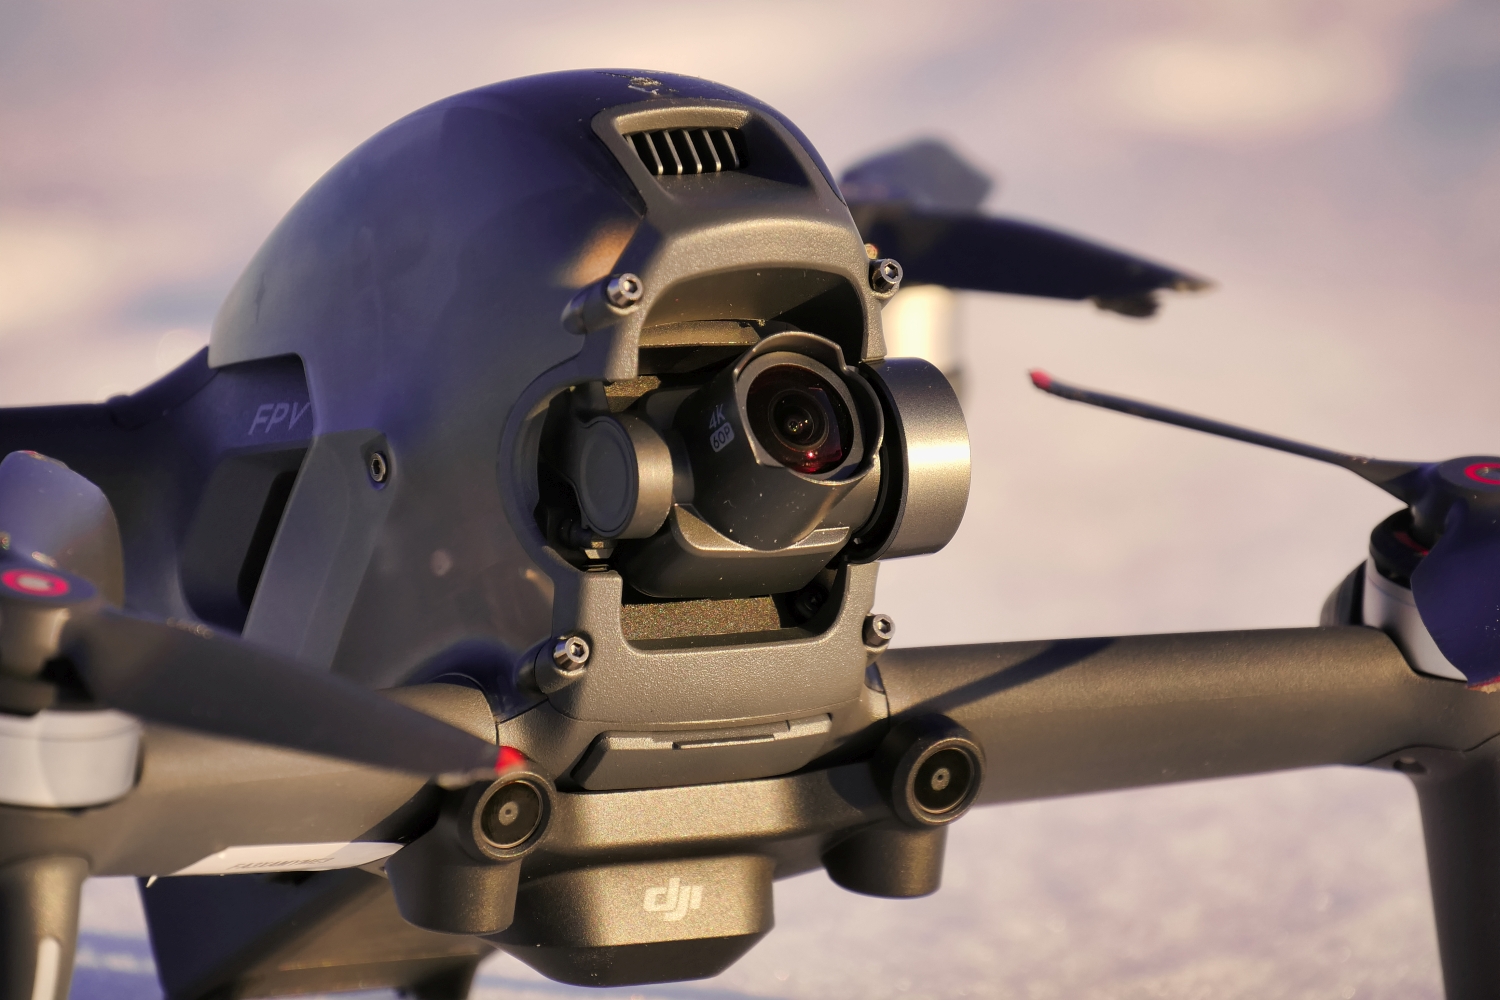 dji fpv drone review